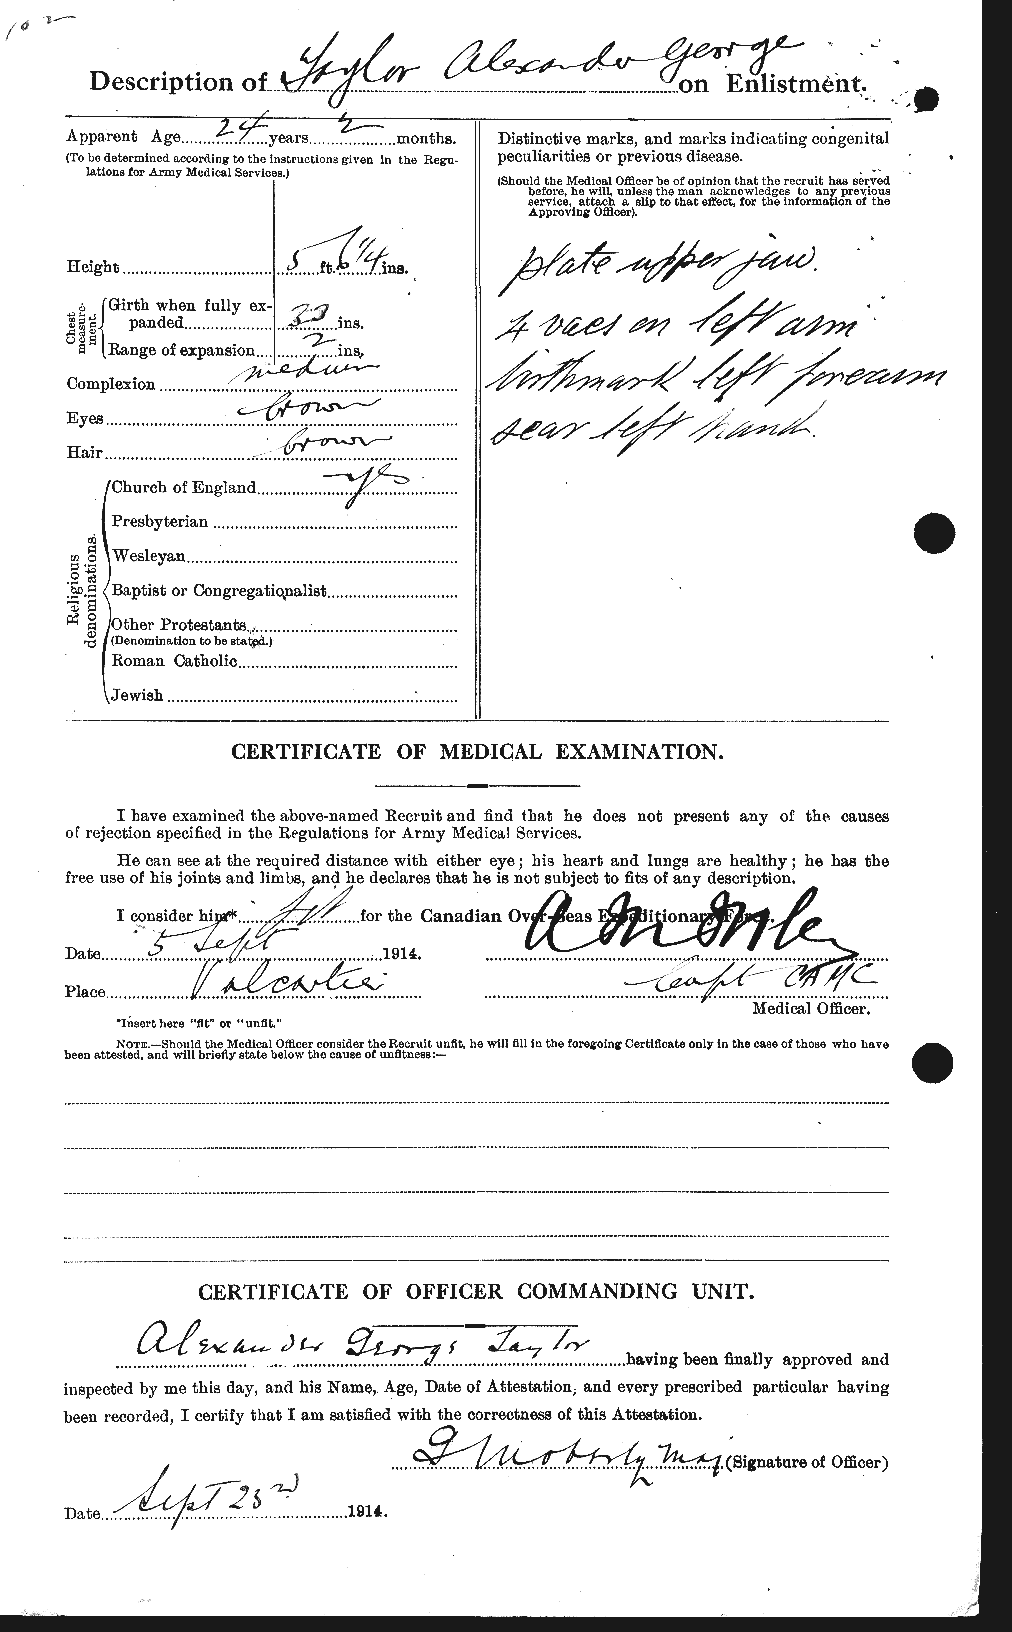 Dossiers du Personnel de la Première Guerre mondiale - CEC 626152b